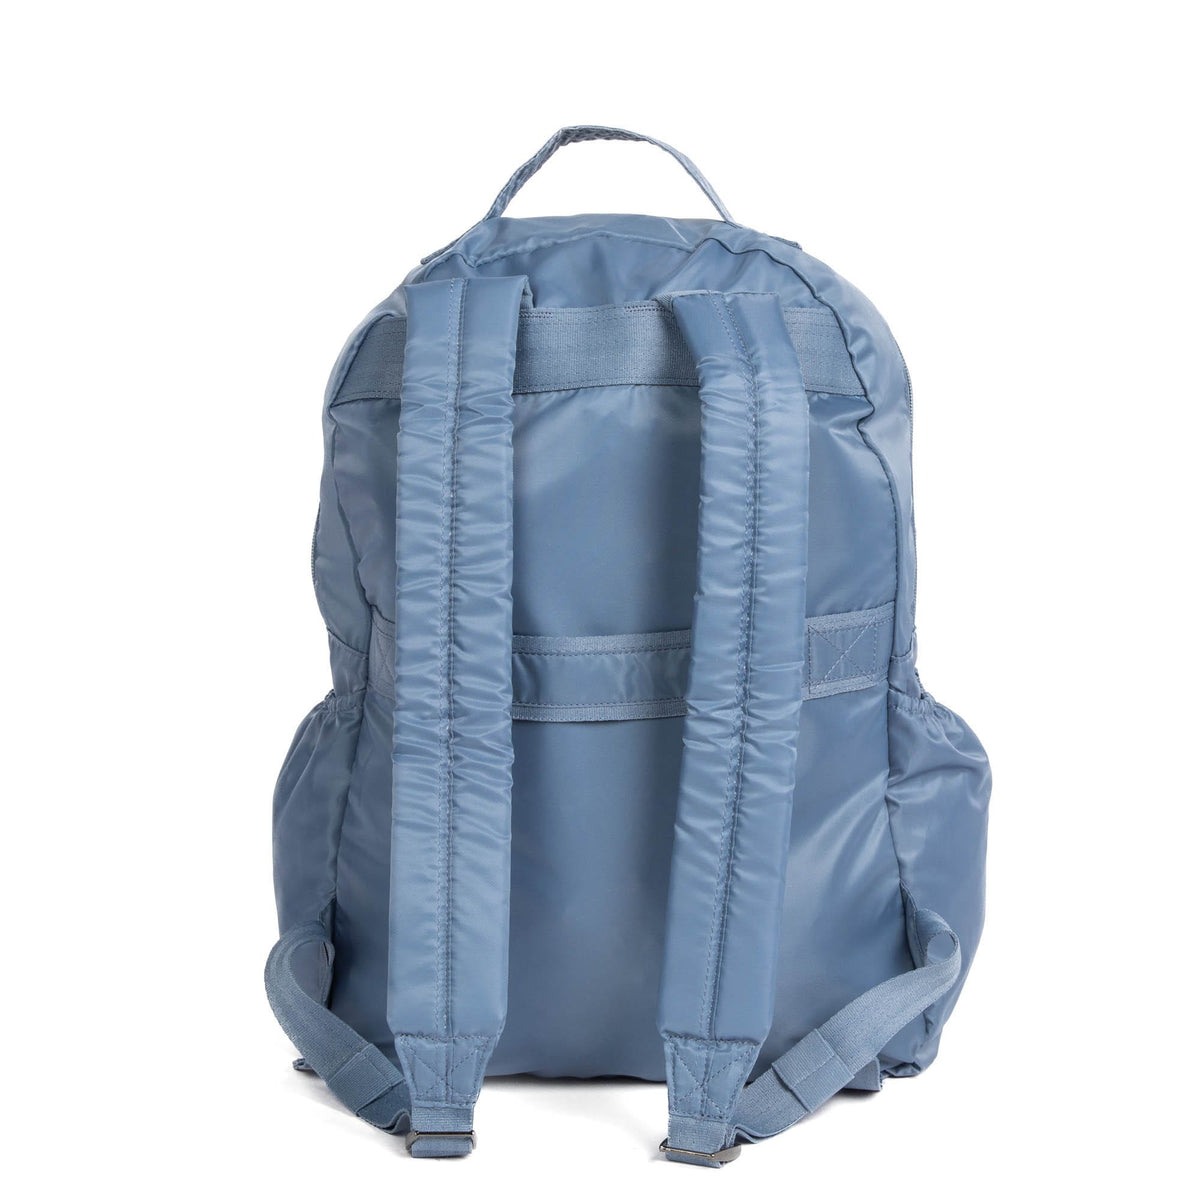 Puddle Jumper SE Packable Backpack